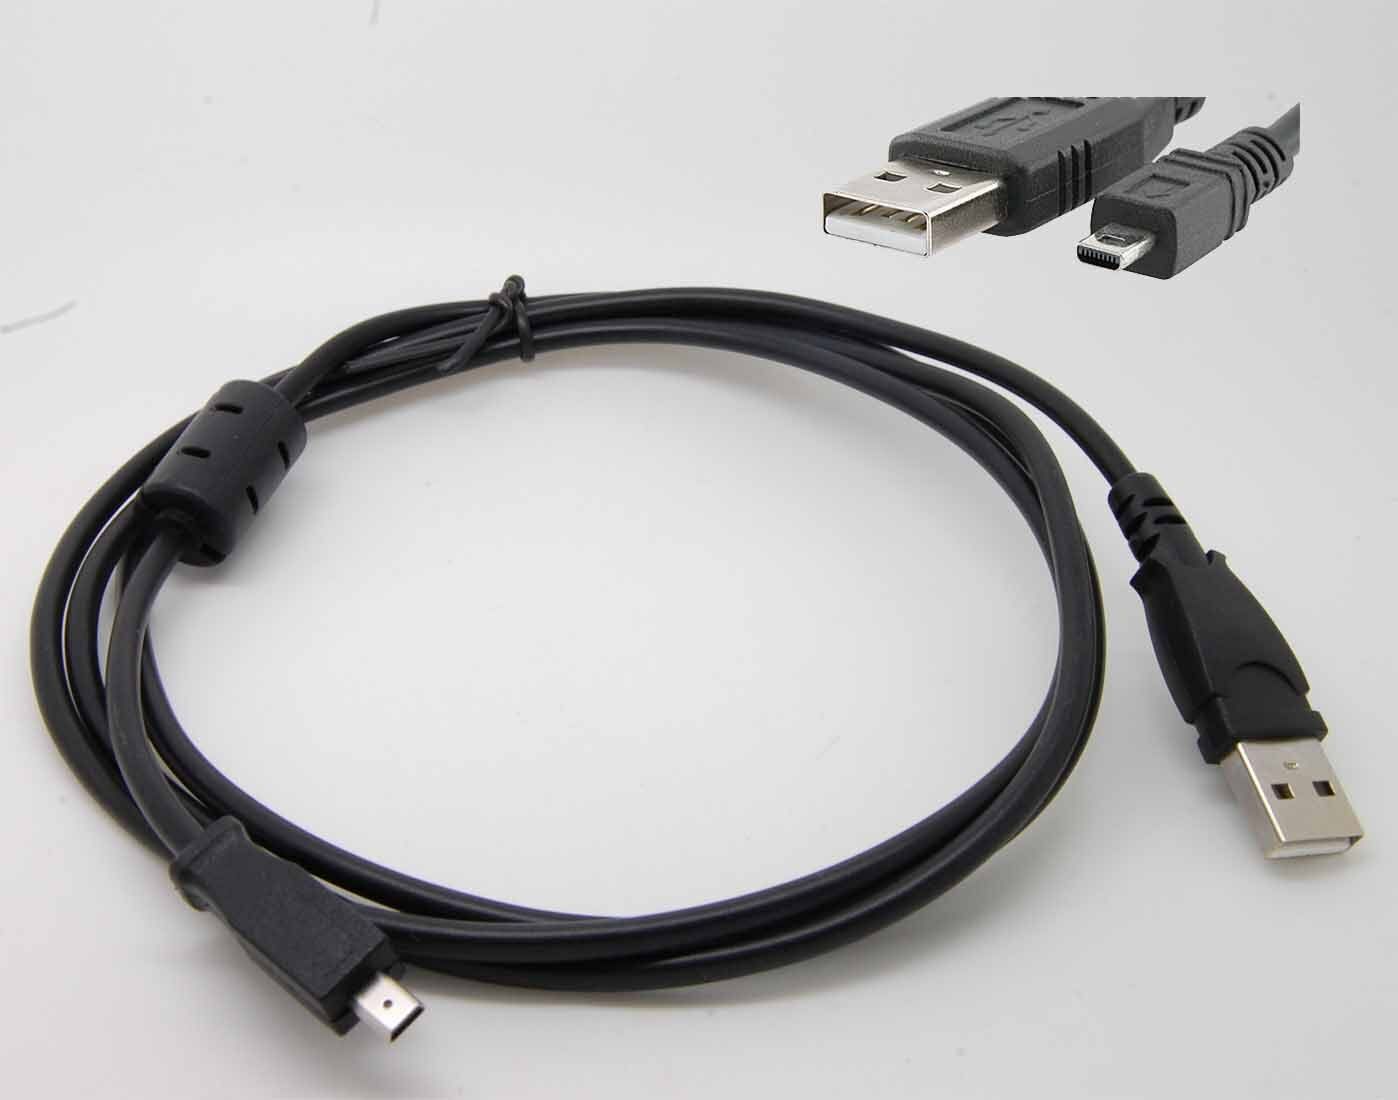 USB CABLE FOR KODAK V Cameras V1003 V1073 V1233 V1253 V1273 V530 V550 V570 V603